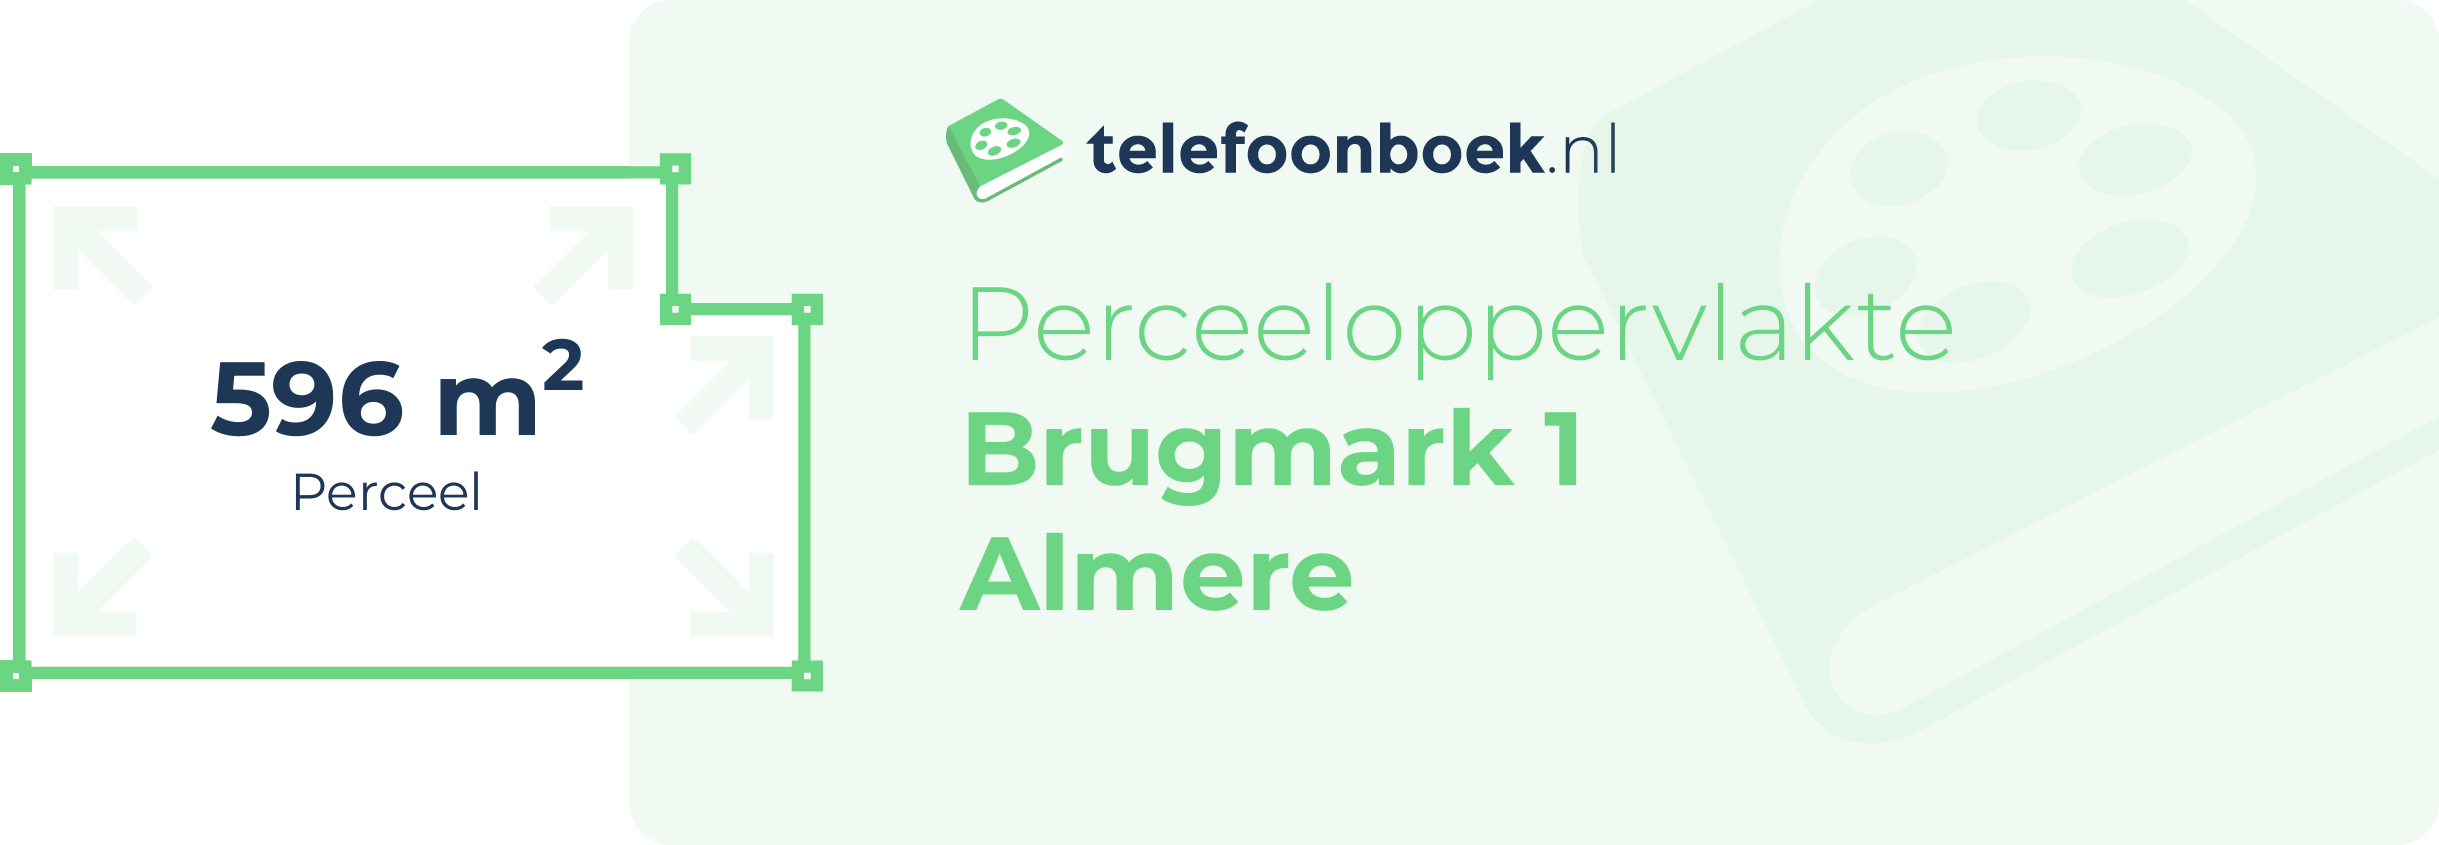 Perceeloppervlakte Brugmark 1 Almere